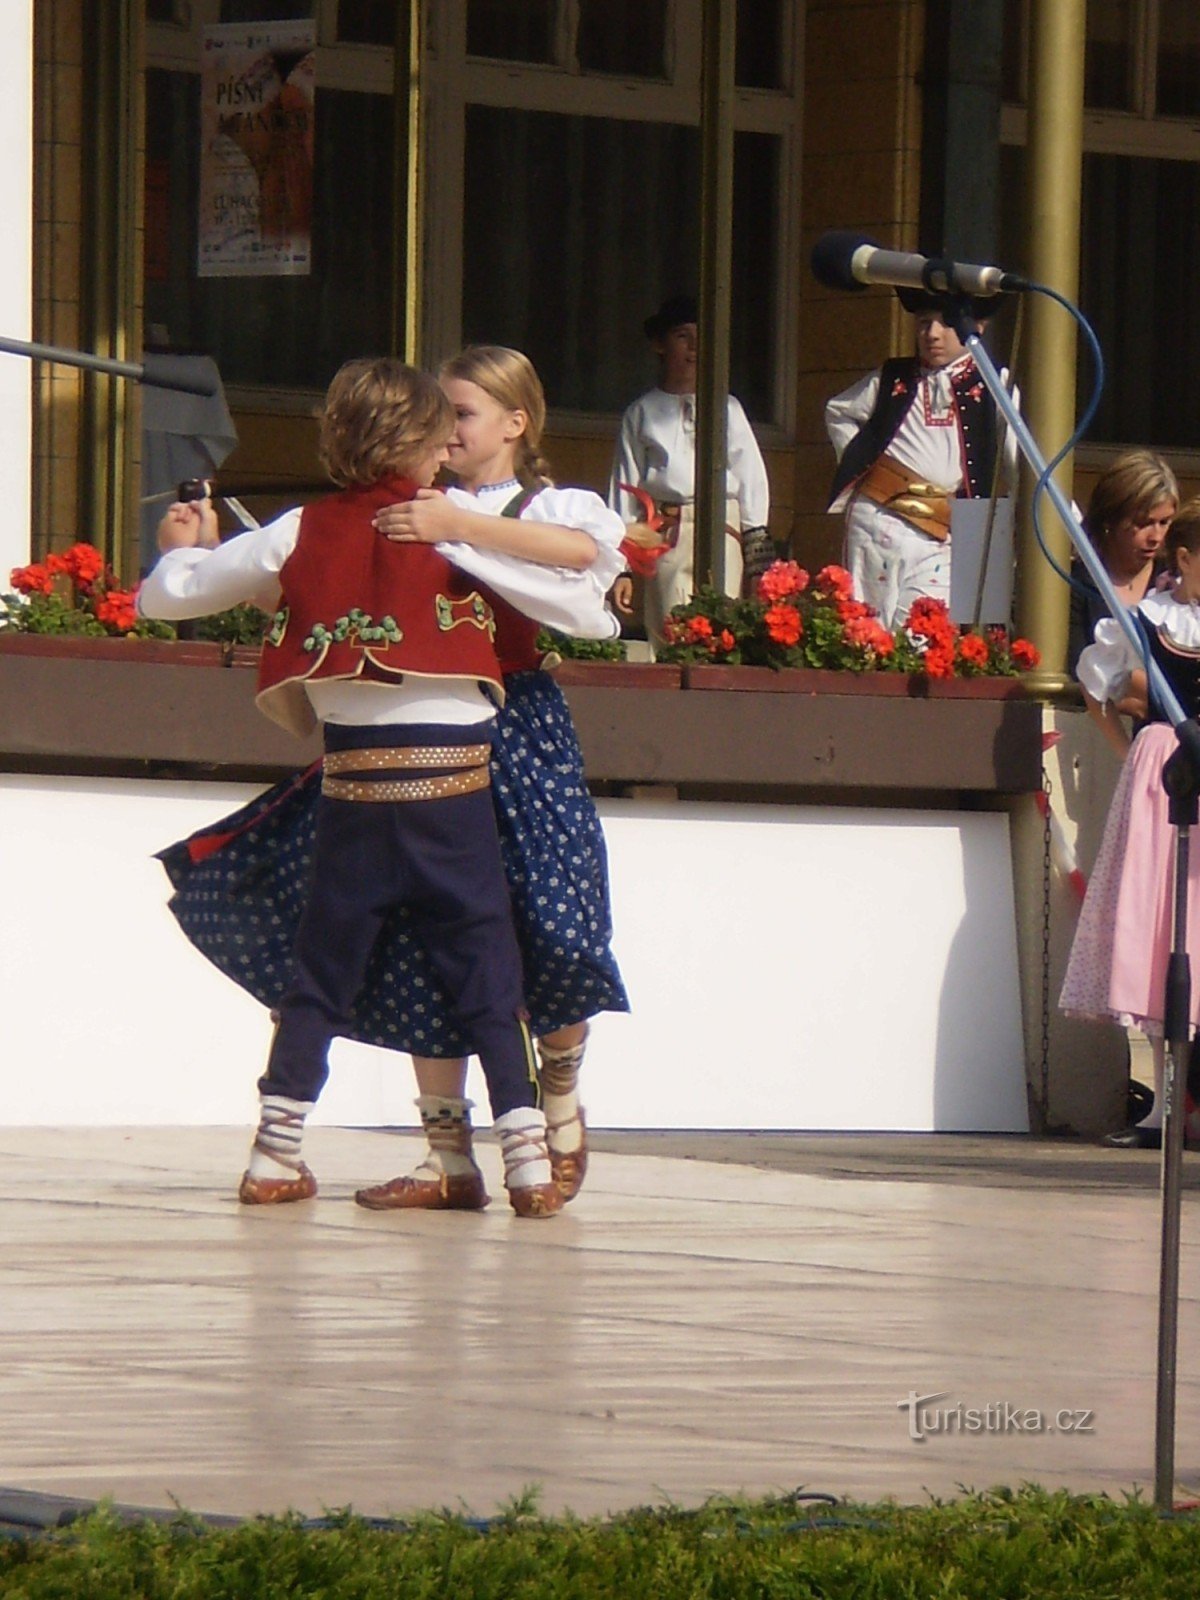 Luhačovice - Festival för barns folkloreensembler Sång och dans